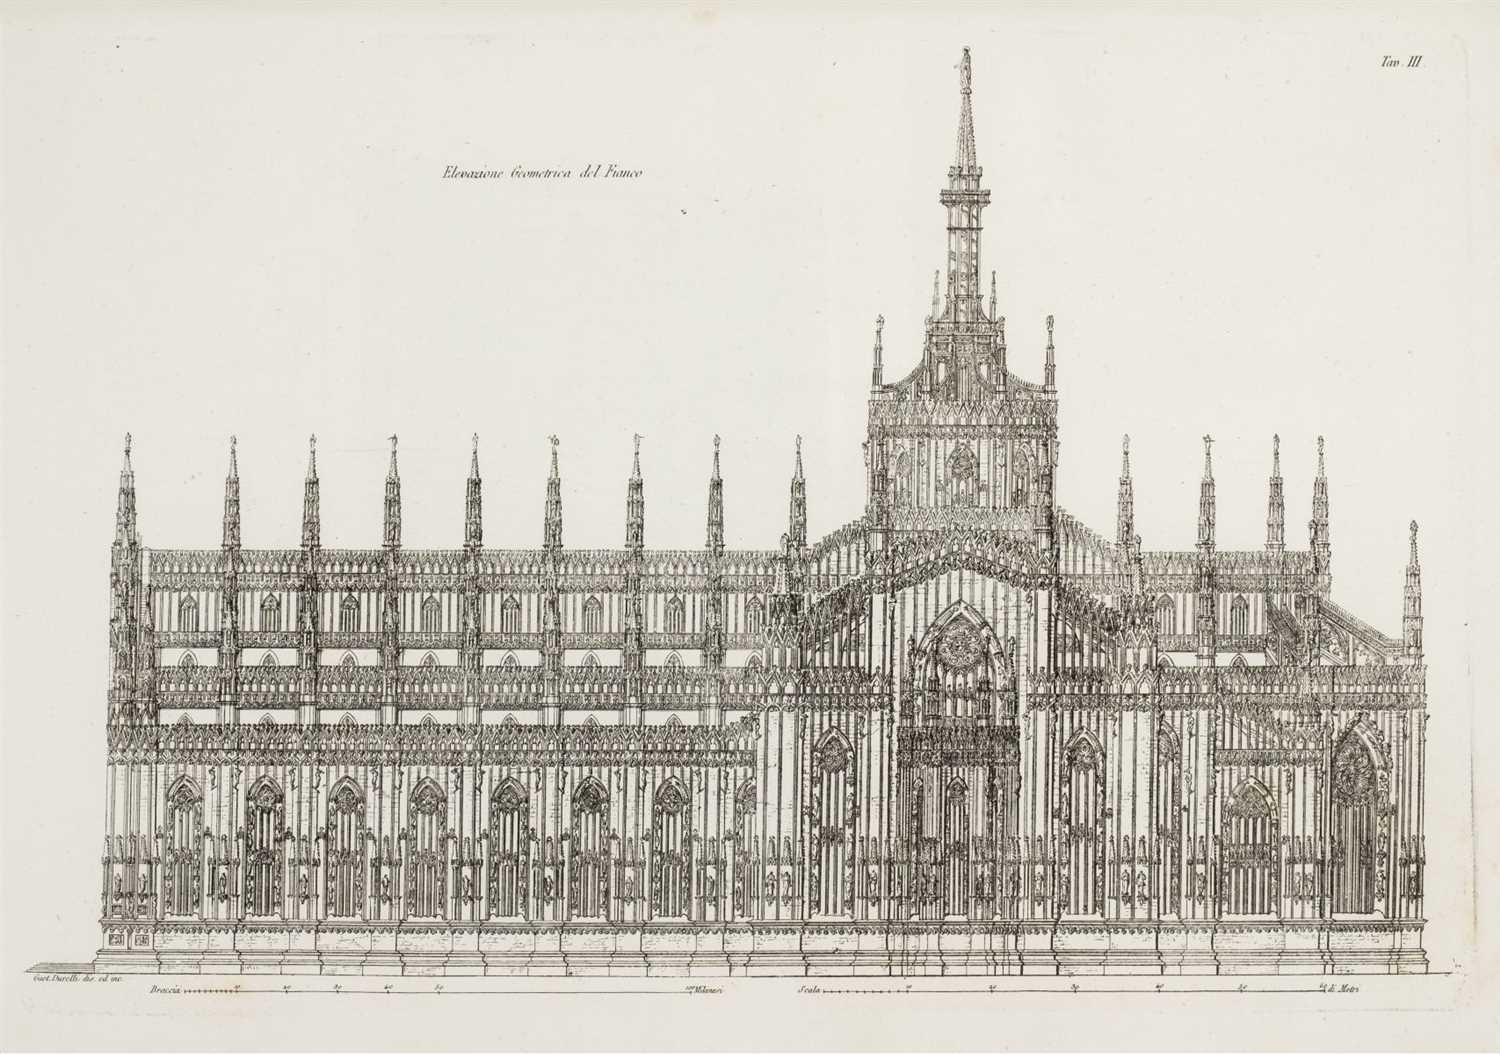 Lot 310 - Franchetti (Gaetano). Storia ed Descrizione del Duomo di Milano, 1st edition, 1821